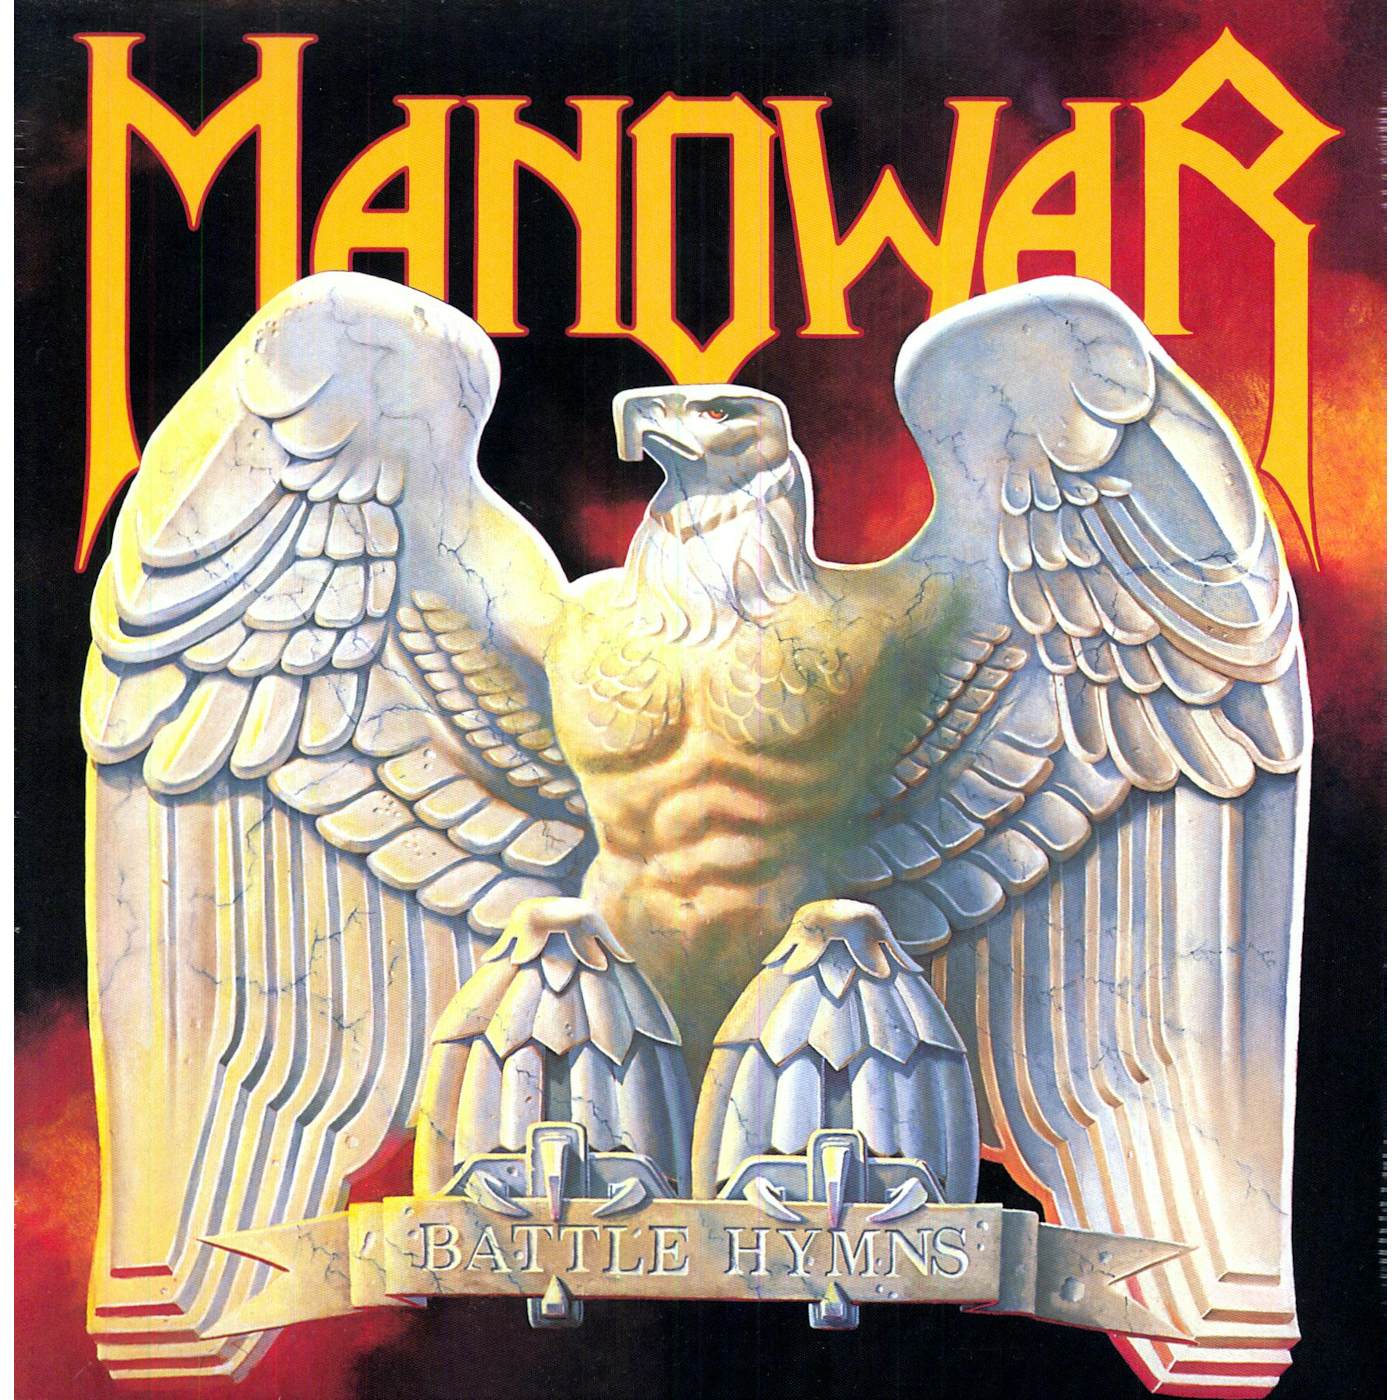 Manowar Battle Hymns Vinyl Record